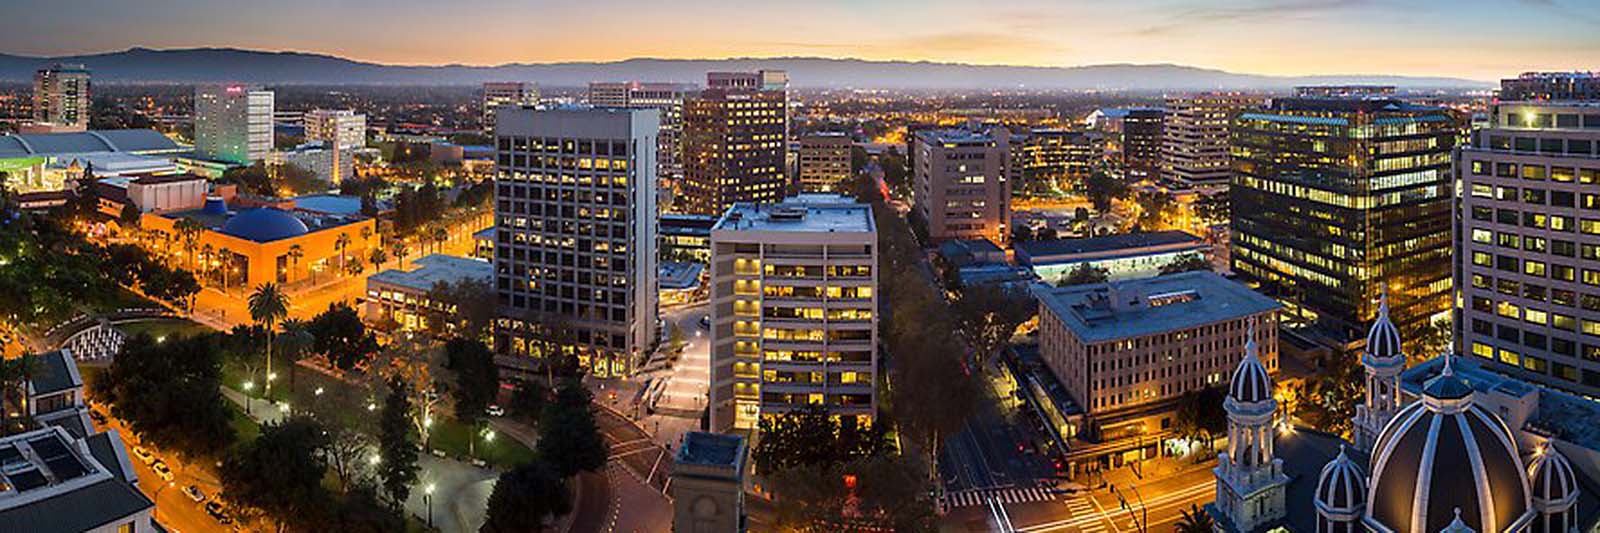 Downtown San Jose skyline and Santa Cruz Mountains at dusk. San Jose, California, USA